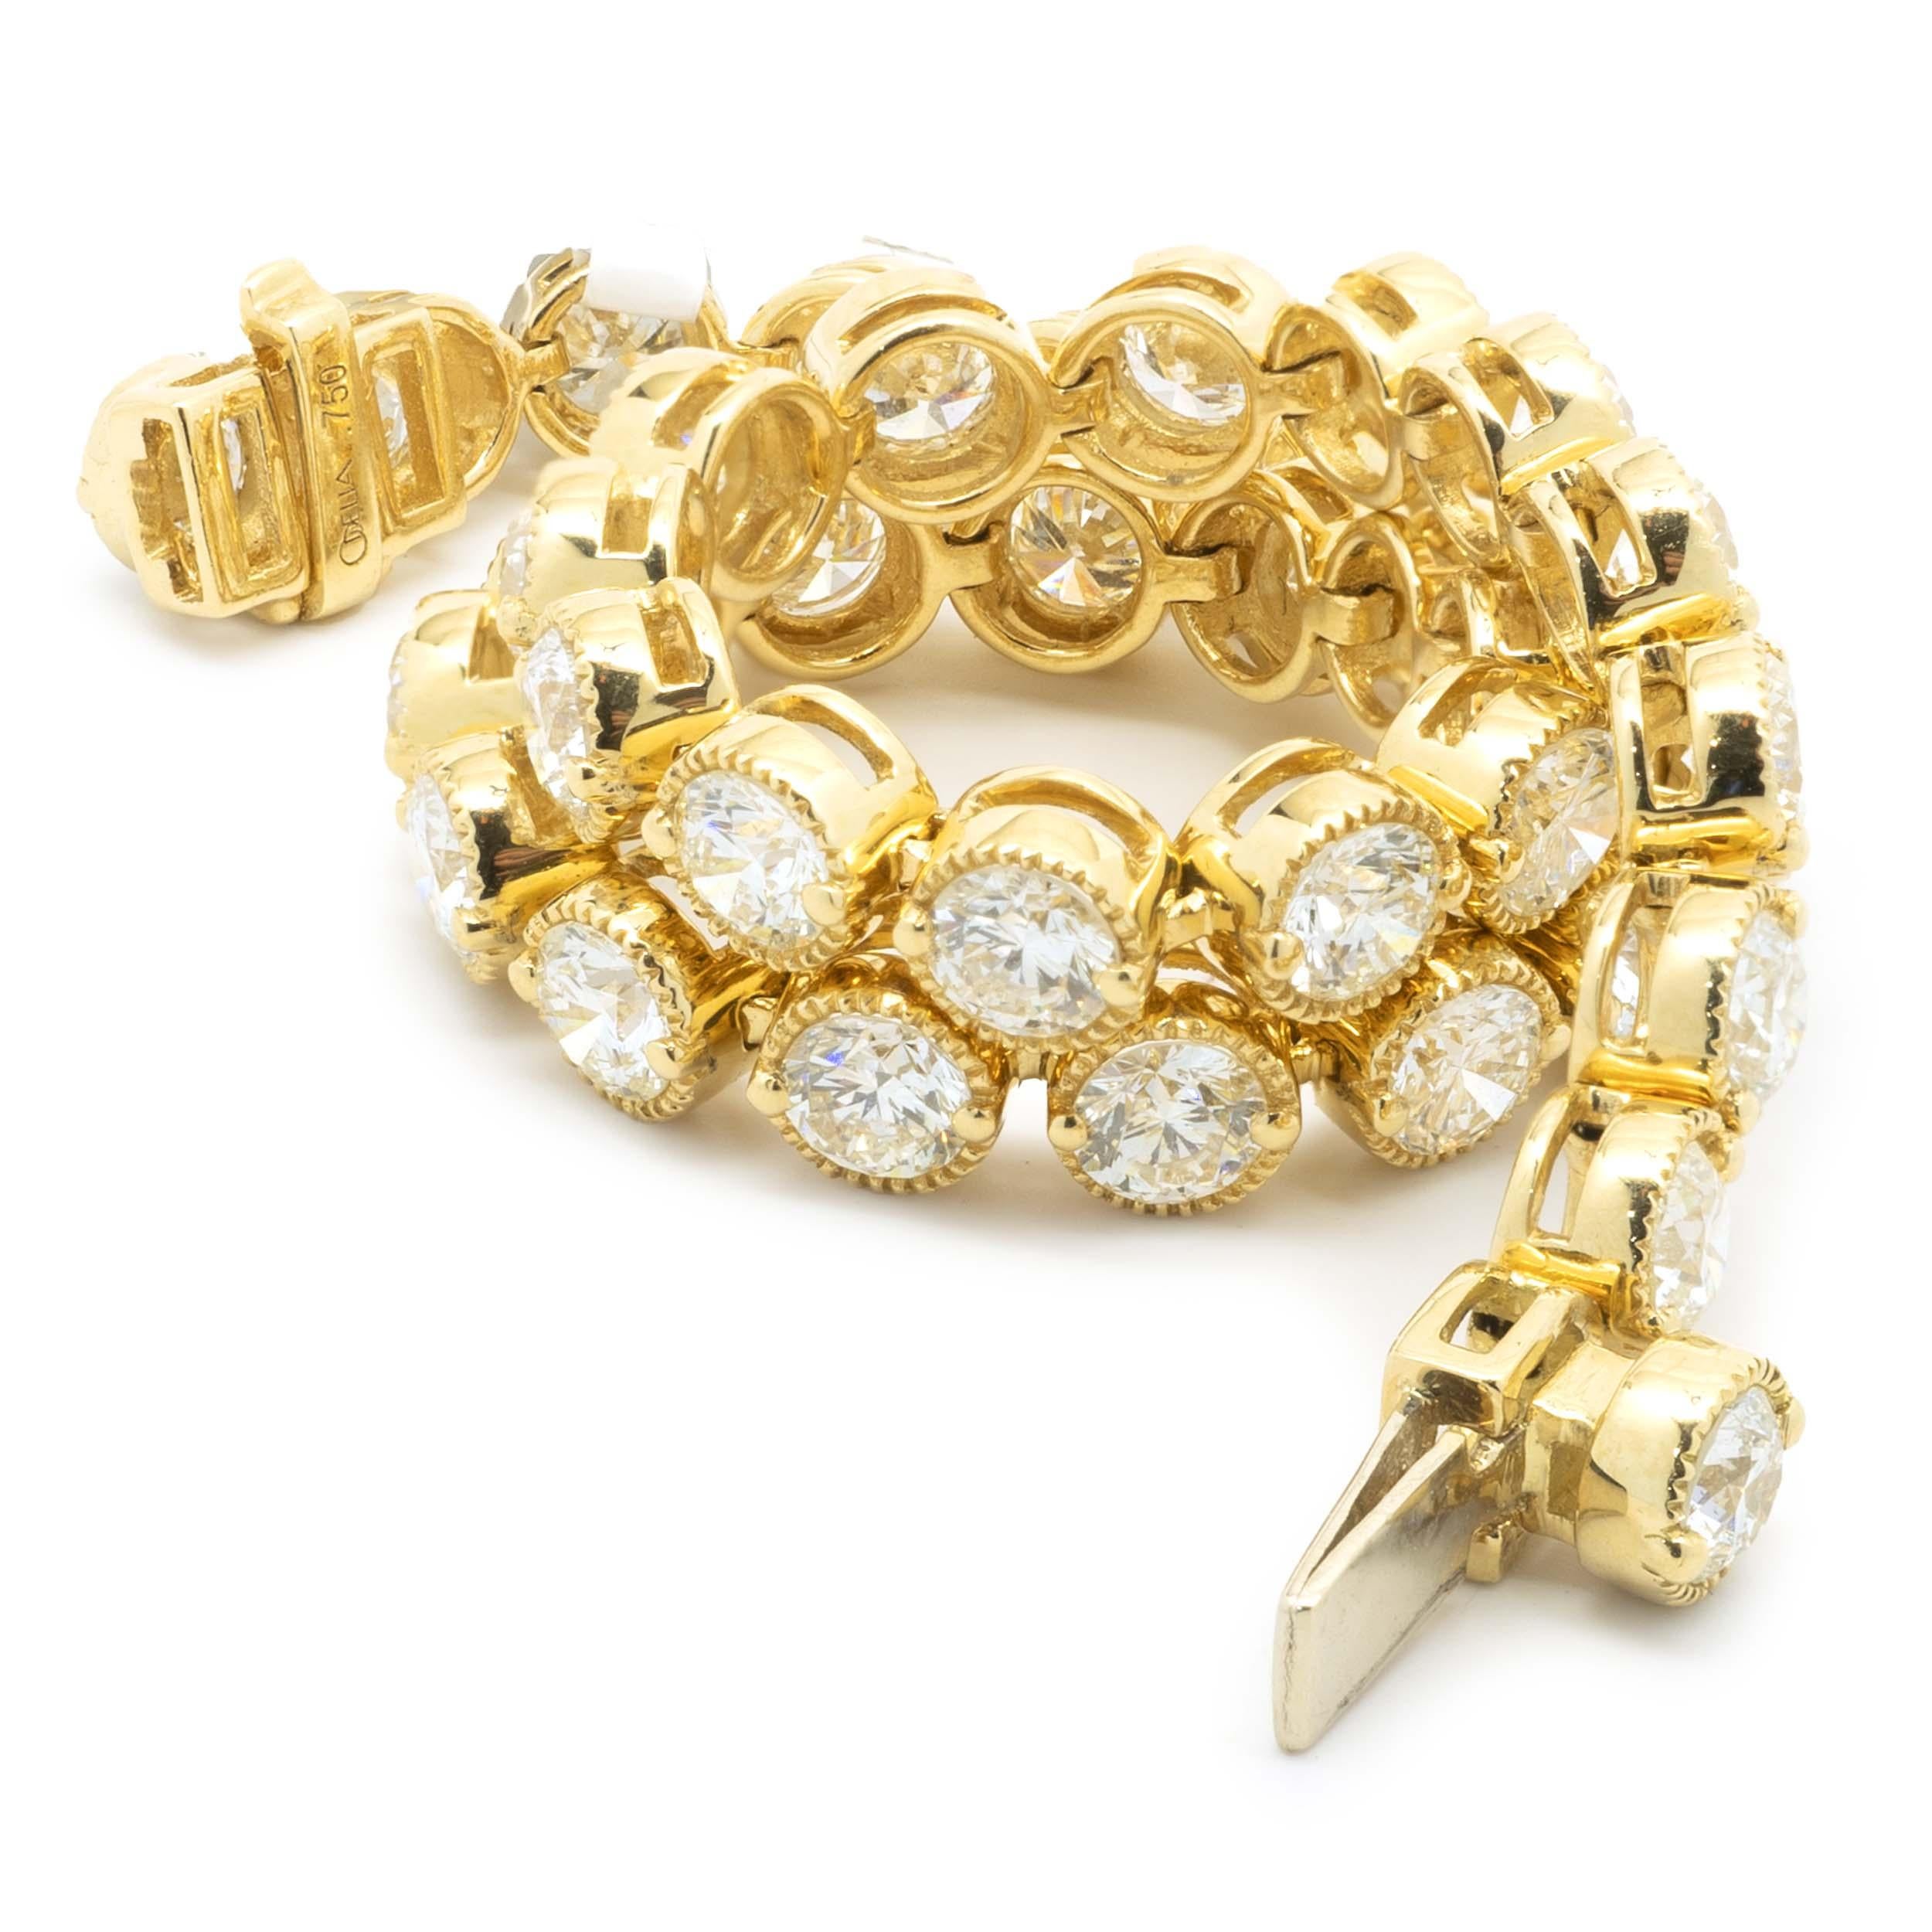 Designer : custom
Matériau : or jaune 18K
Diamants : 38 diamants ronds de taille brillant = 7,00cttw
Couleur : H
Clarté : SI1
Dimensions : le bracelet convient à un poignet de 7 pouces maximum
Poids : 14,15 grammes
